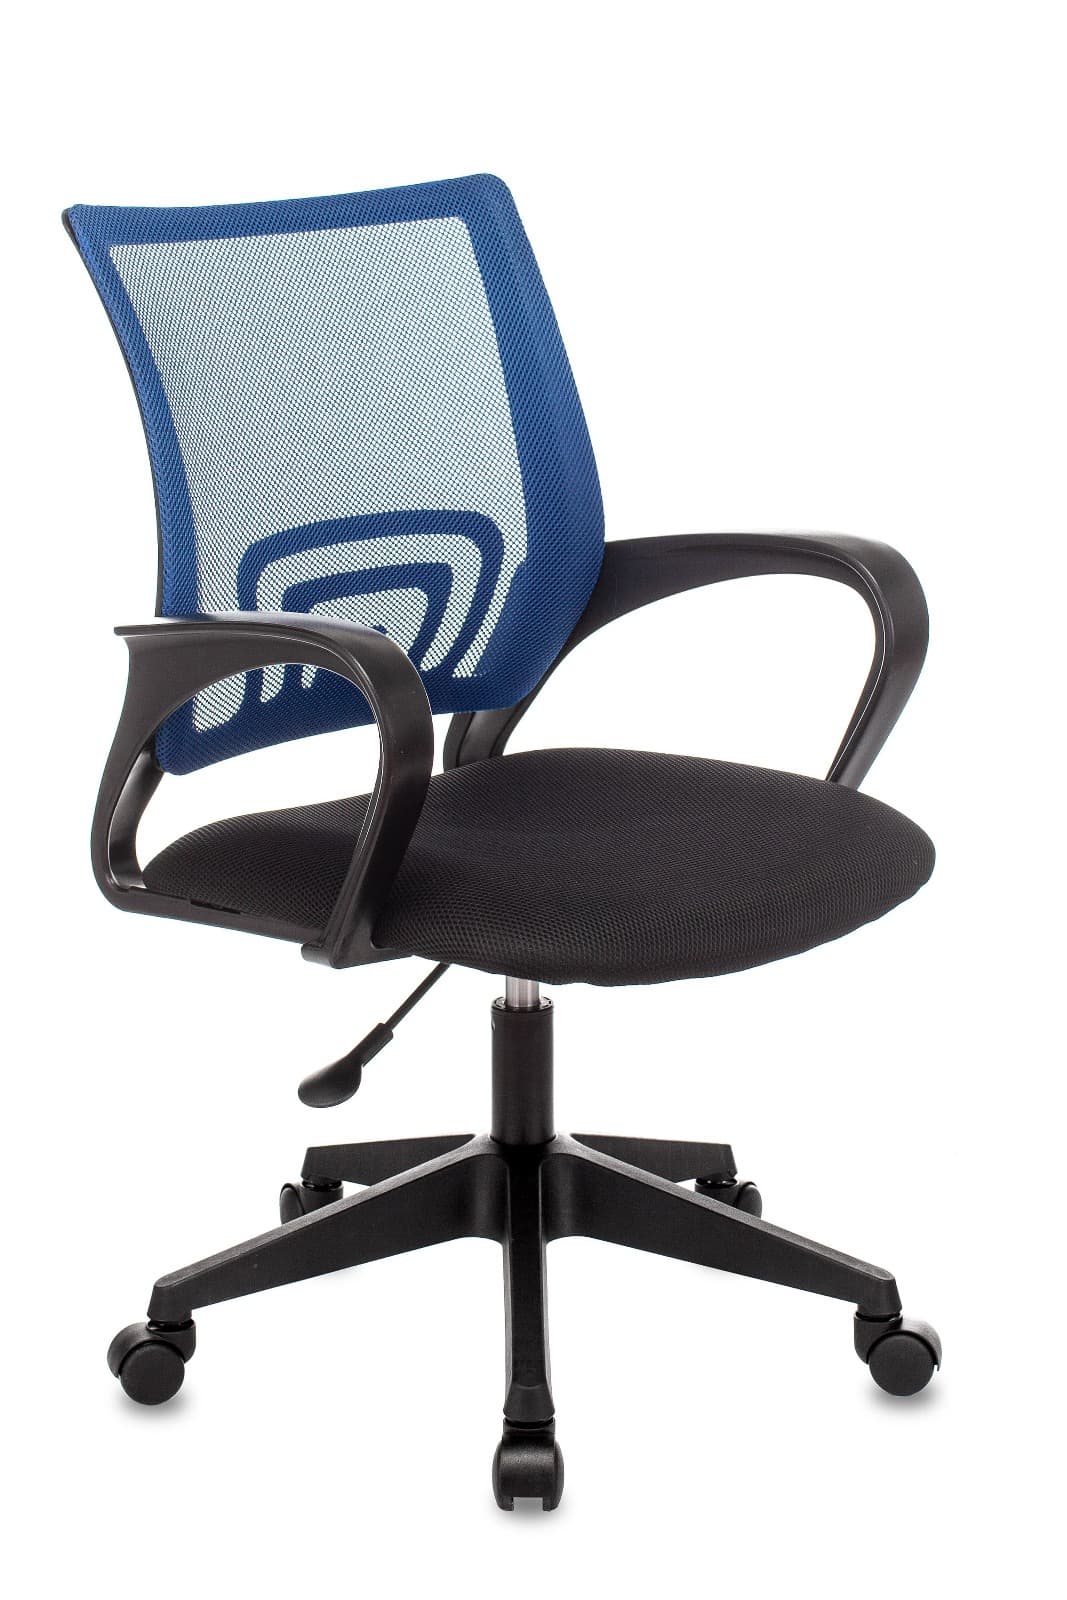 Компьютерное кресло ST-Basic офисное сетка/ткань синий крестовина пластик механизм Пиастра